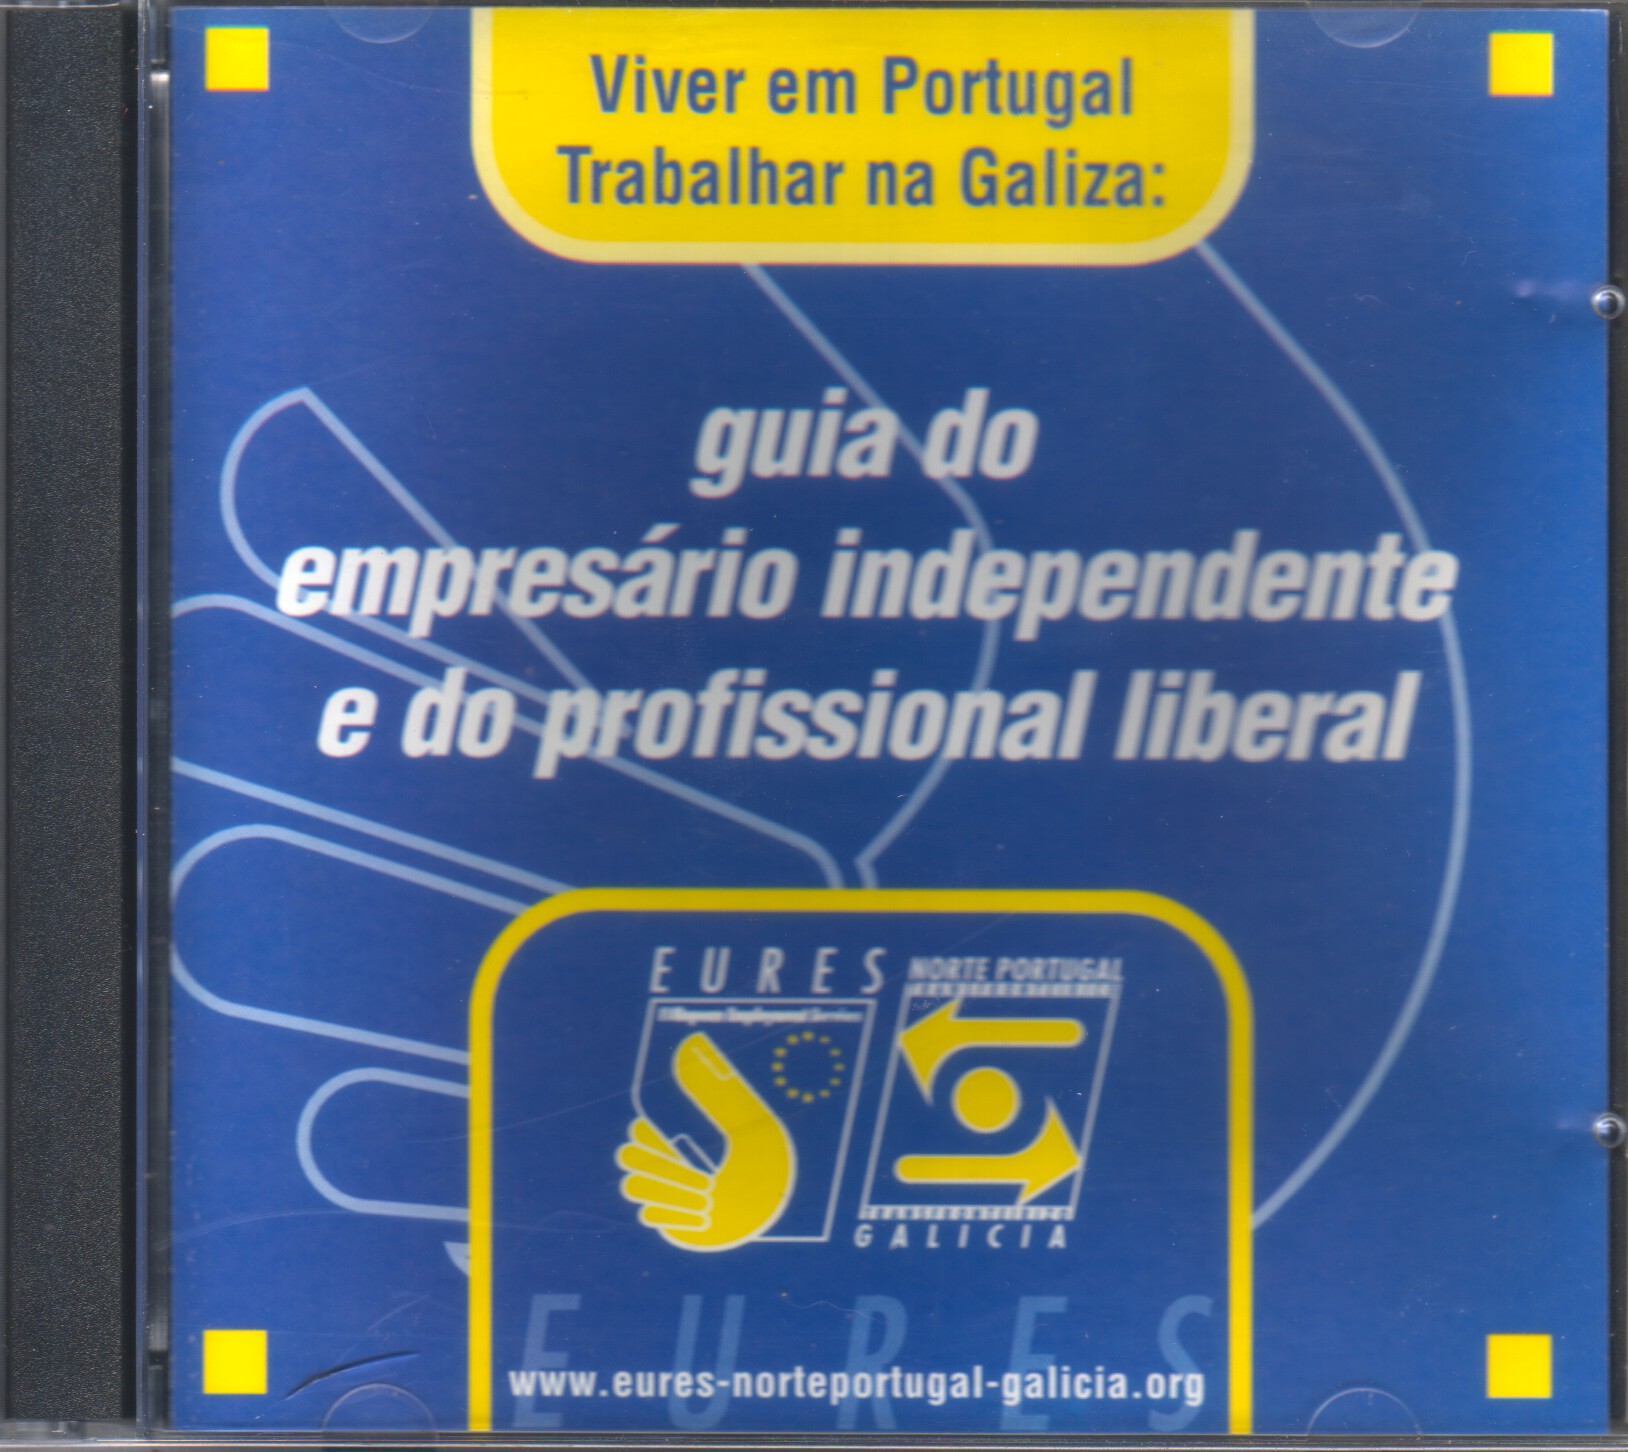 CD-Rom EURES - Viver em Portugal, Trabalhar na Galiza